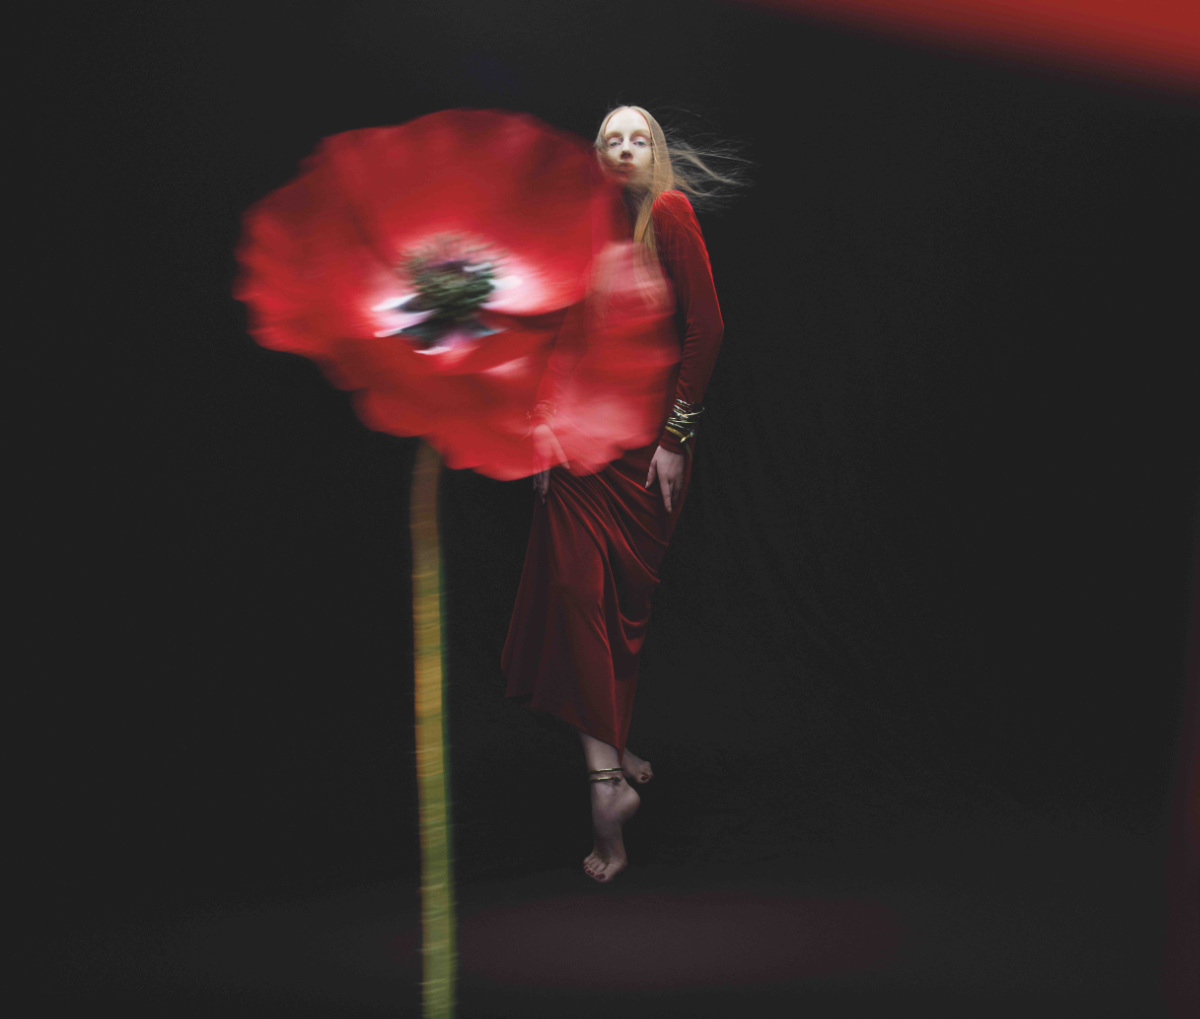 A New Addition to Jo Malone - The Ravishing Scarlet Poppy